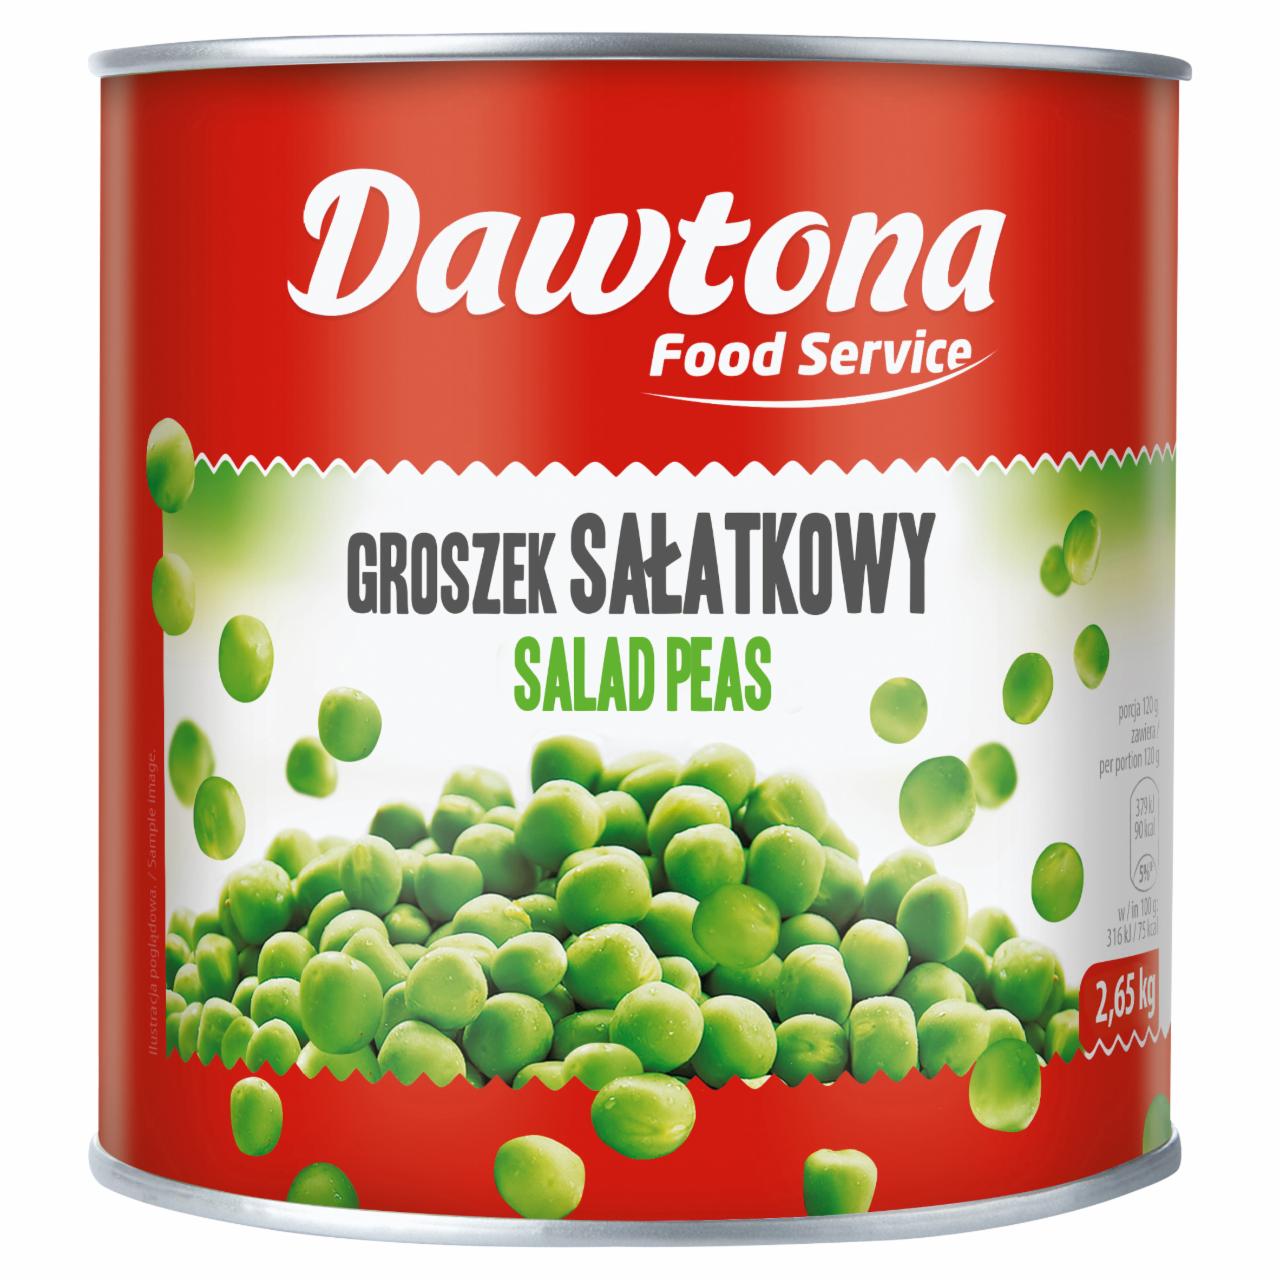 Zdjęcia - Dawtona Food Service Groszek zielony 2,49 kg